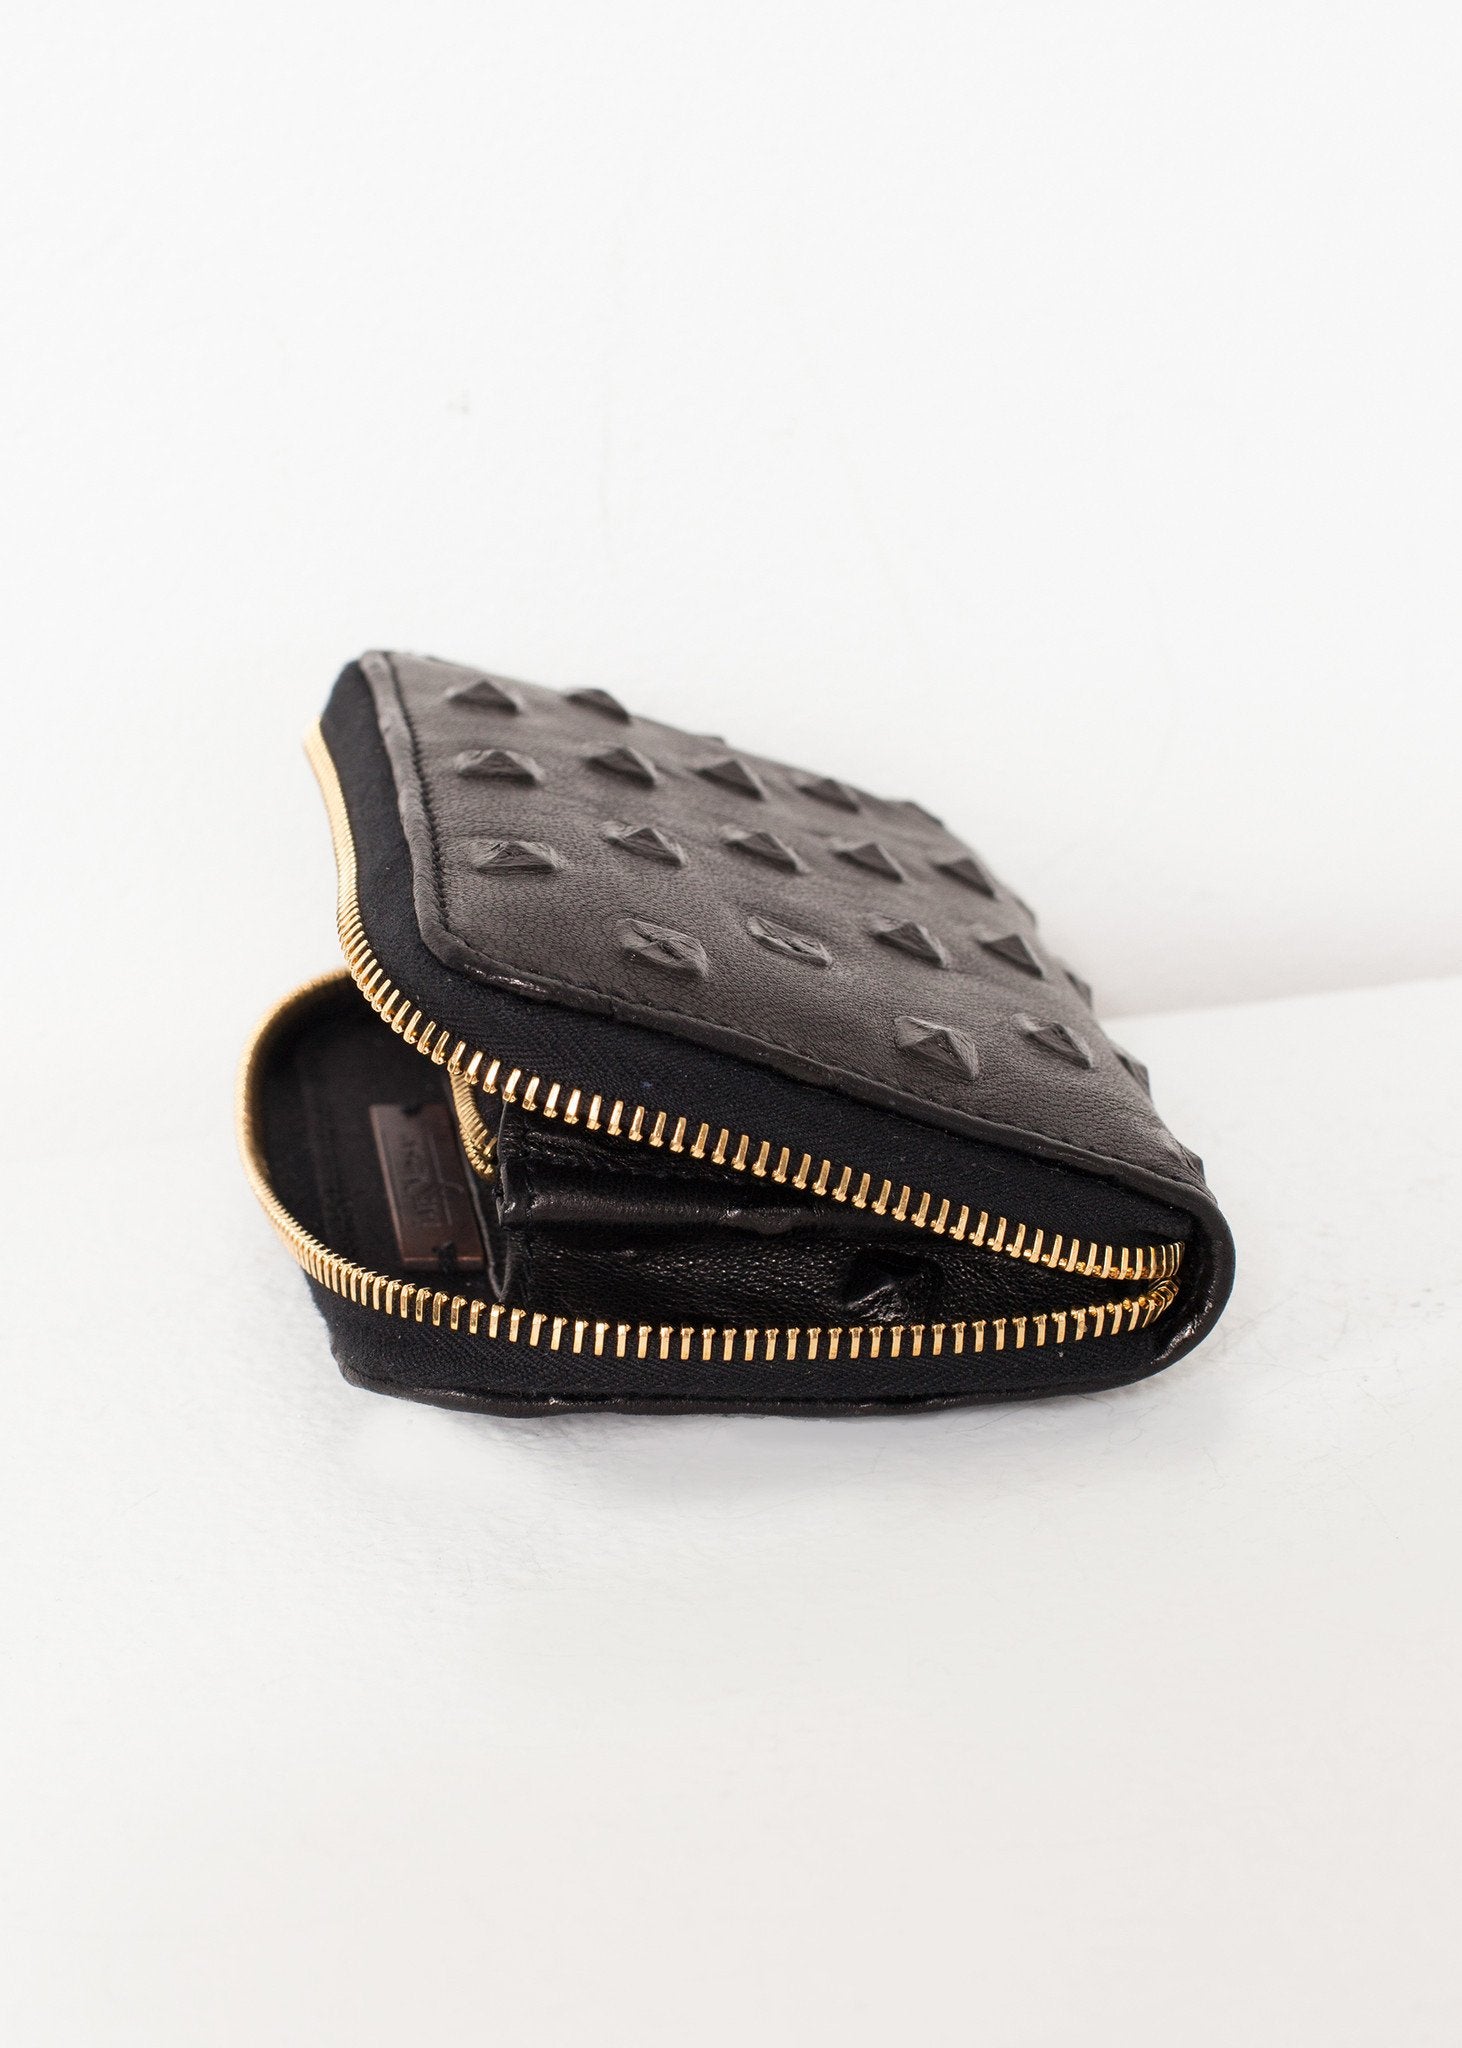 Elodie Leather Wallet in Black